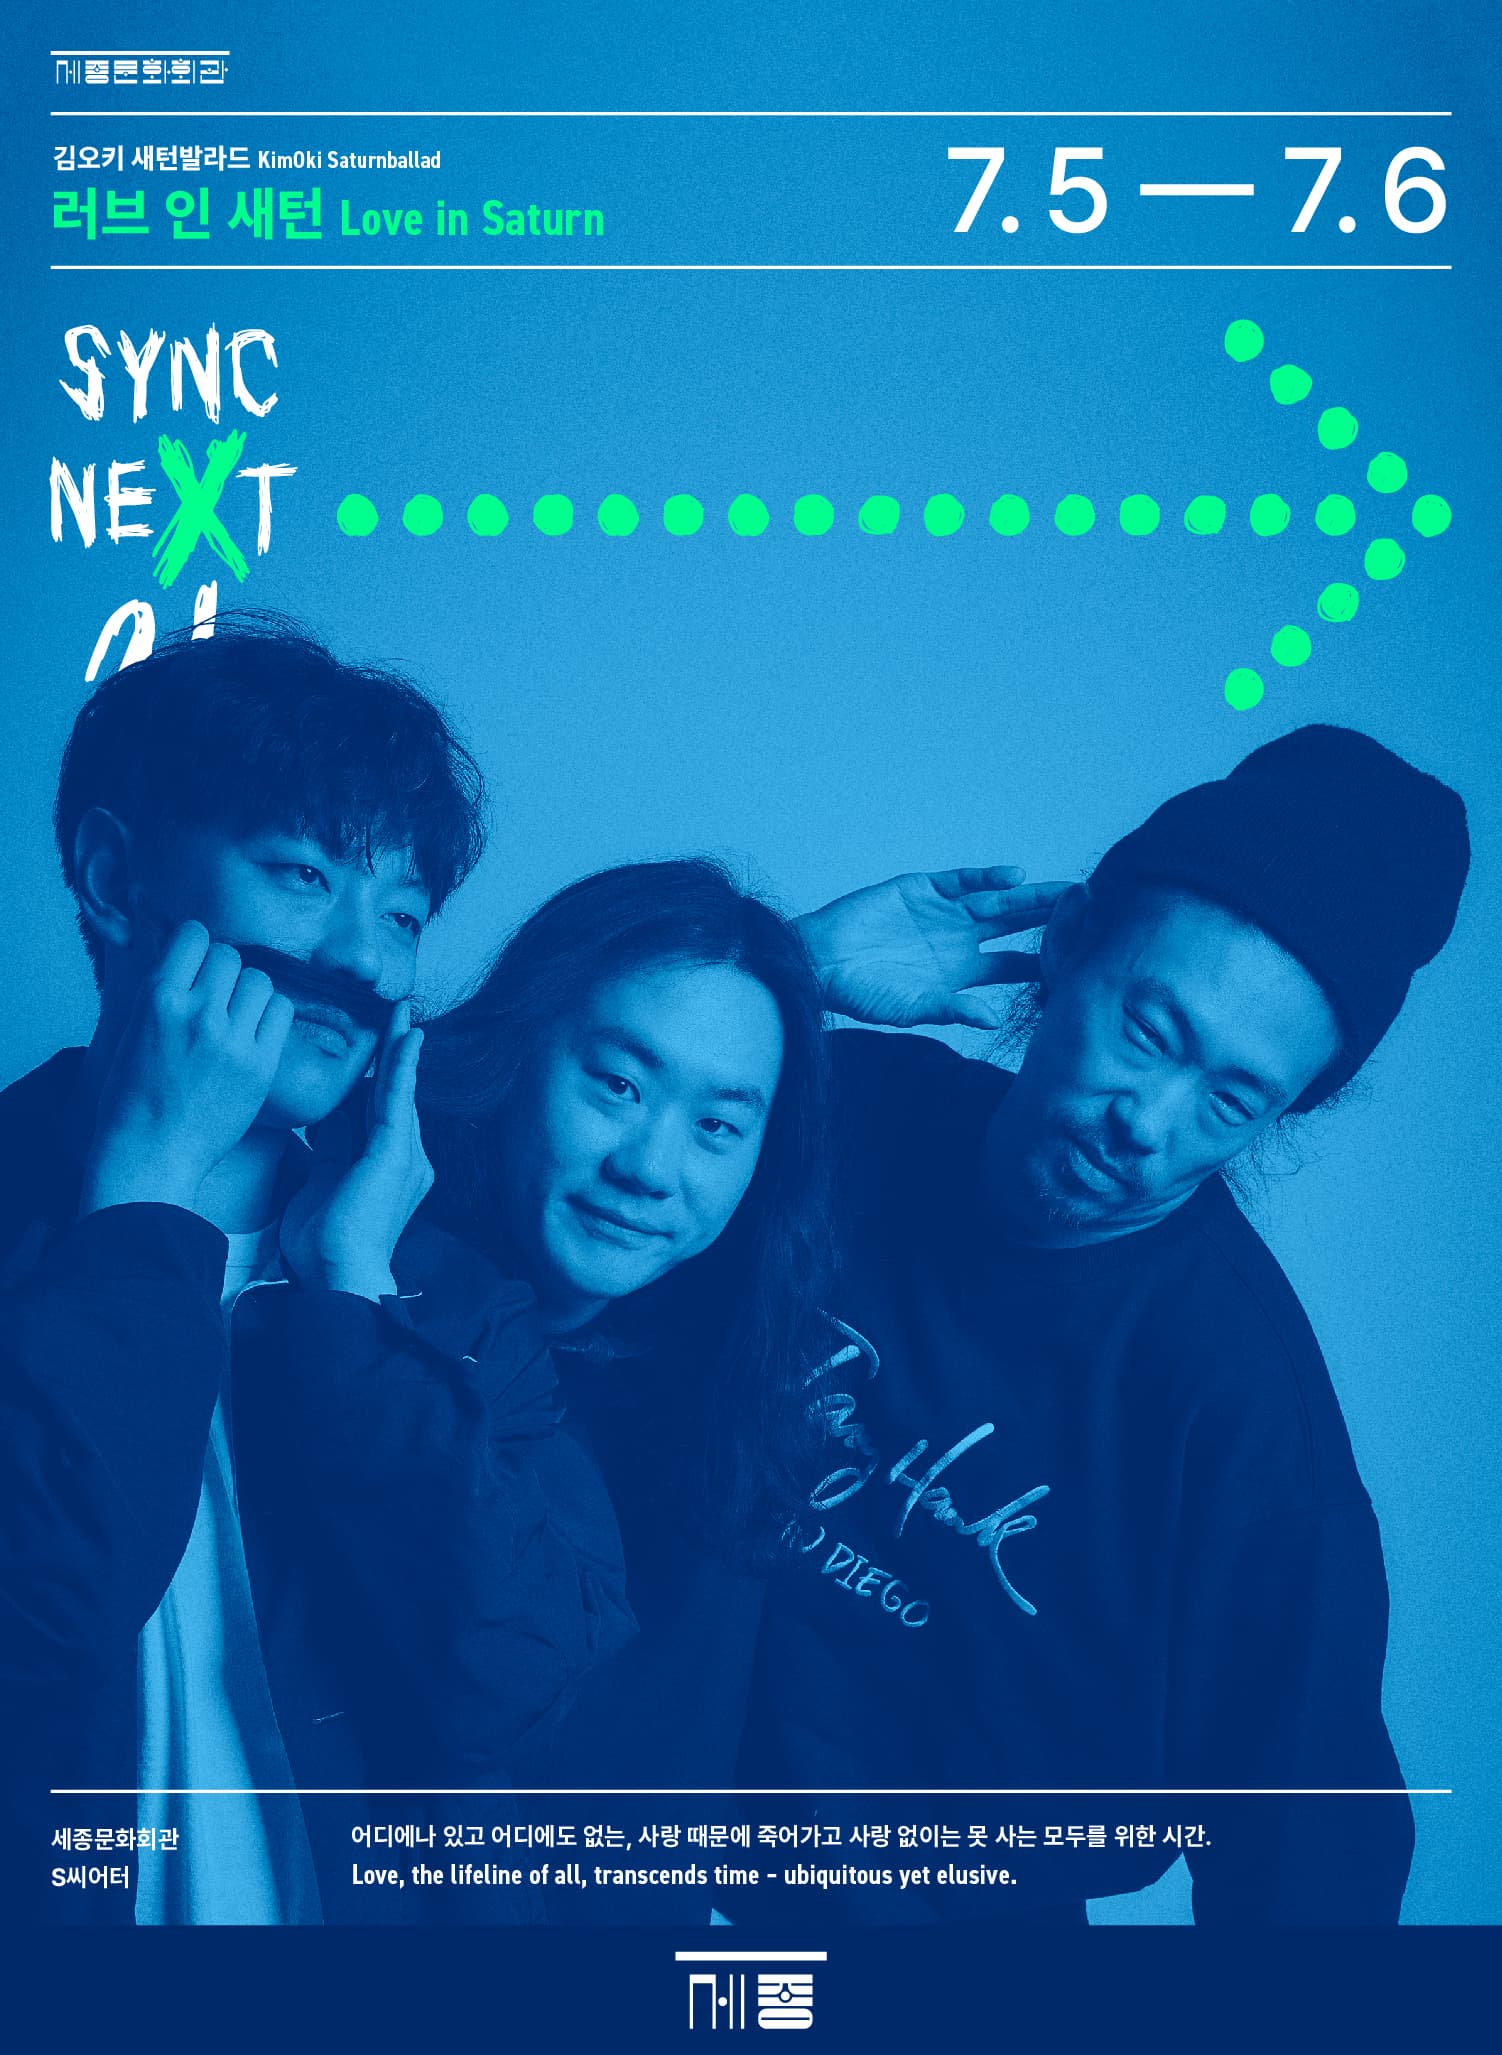 [음악]김오키 새턴발라드 <러브 인 새턴> - Sync Next 24